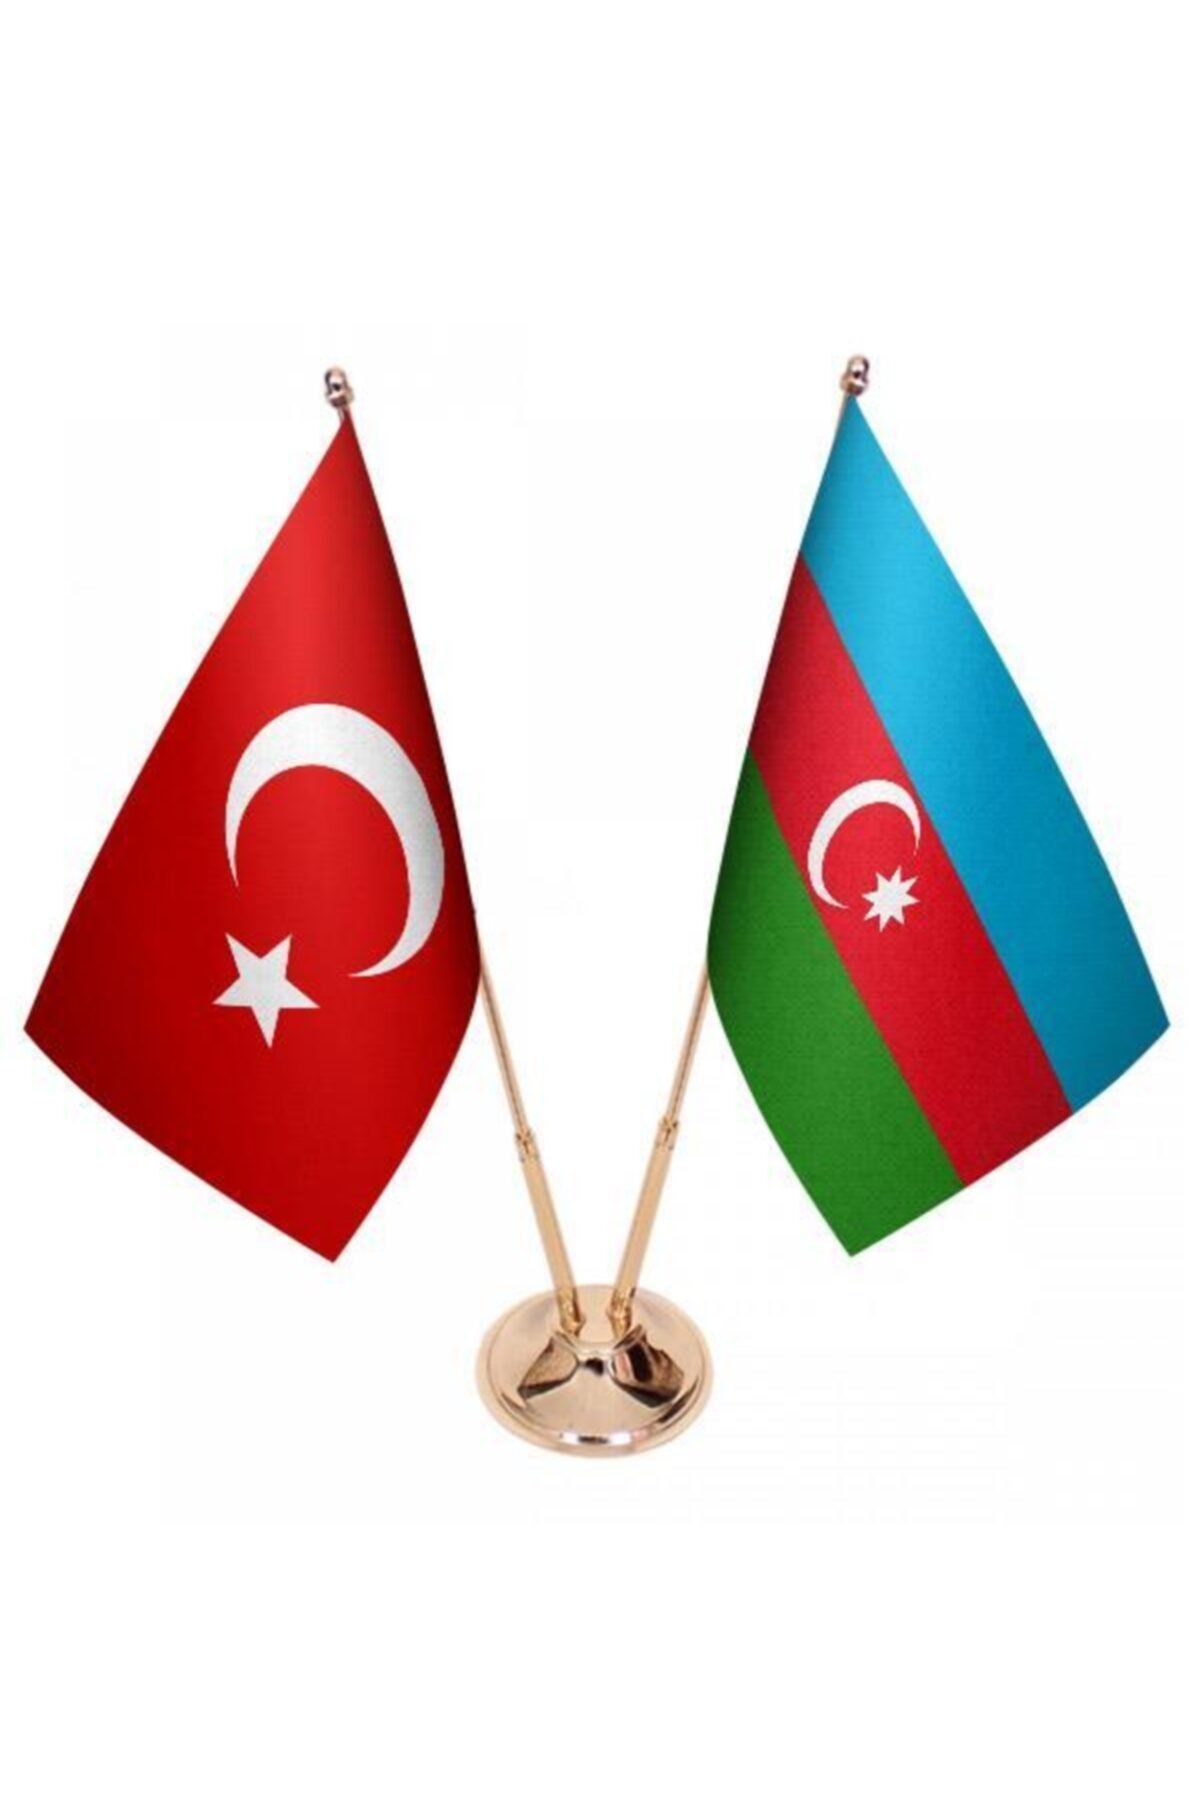 Saturn Masa Üstü Azerbaycan Bayrağı Türk Bayrağı Ikili Pirinç Direk Masa Bayrak Seti